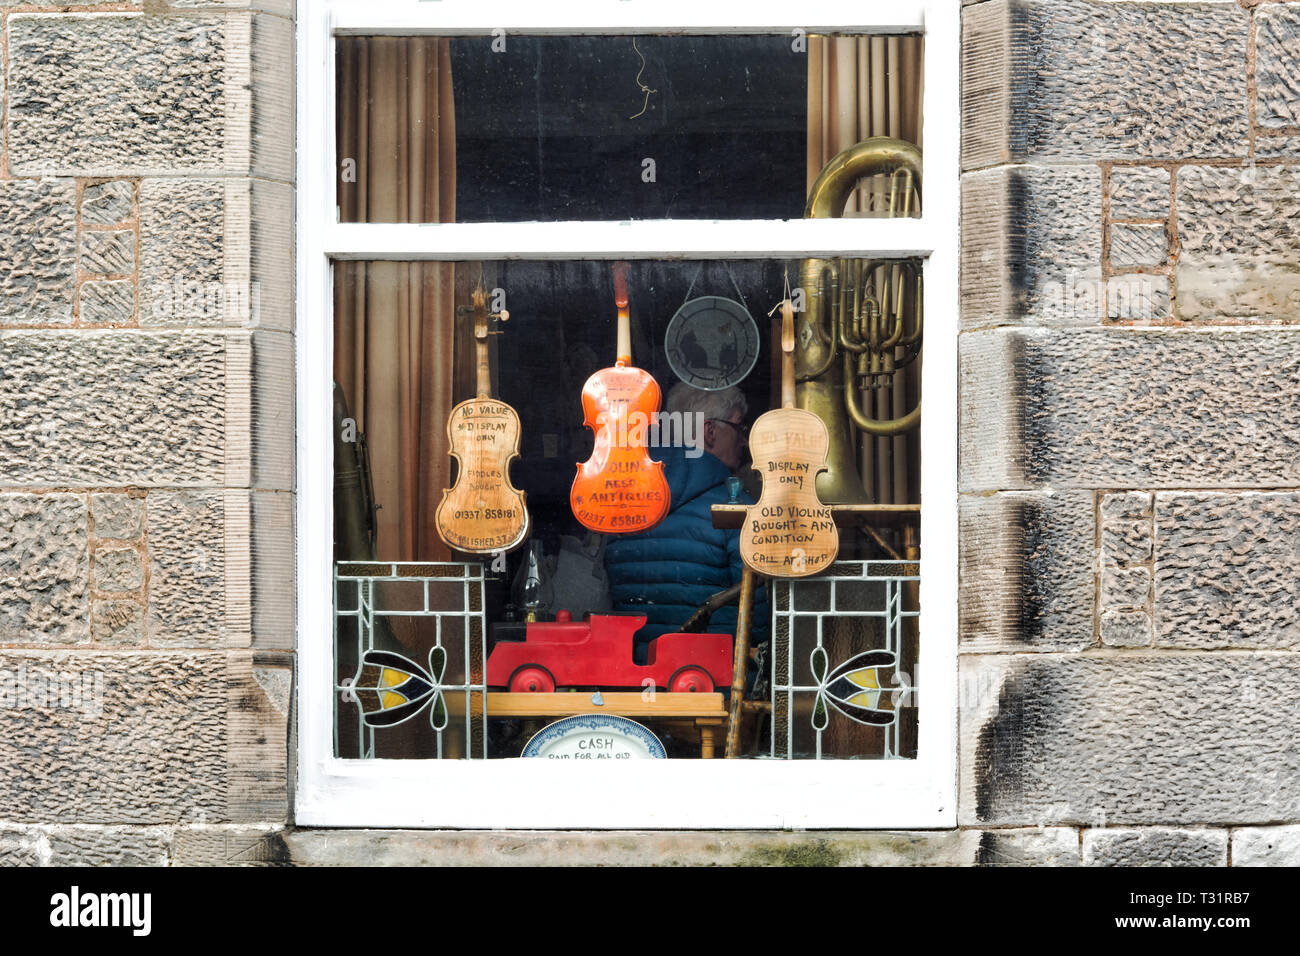 Falkland, Regno Unito - 23 Marzo 2019: strumenti musicali antichi nella finestra di seconda mano e negozio di antiquariato nel villaggio di Falkland in Scozia Foto Stock